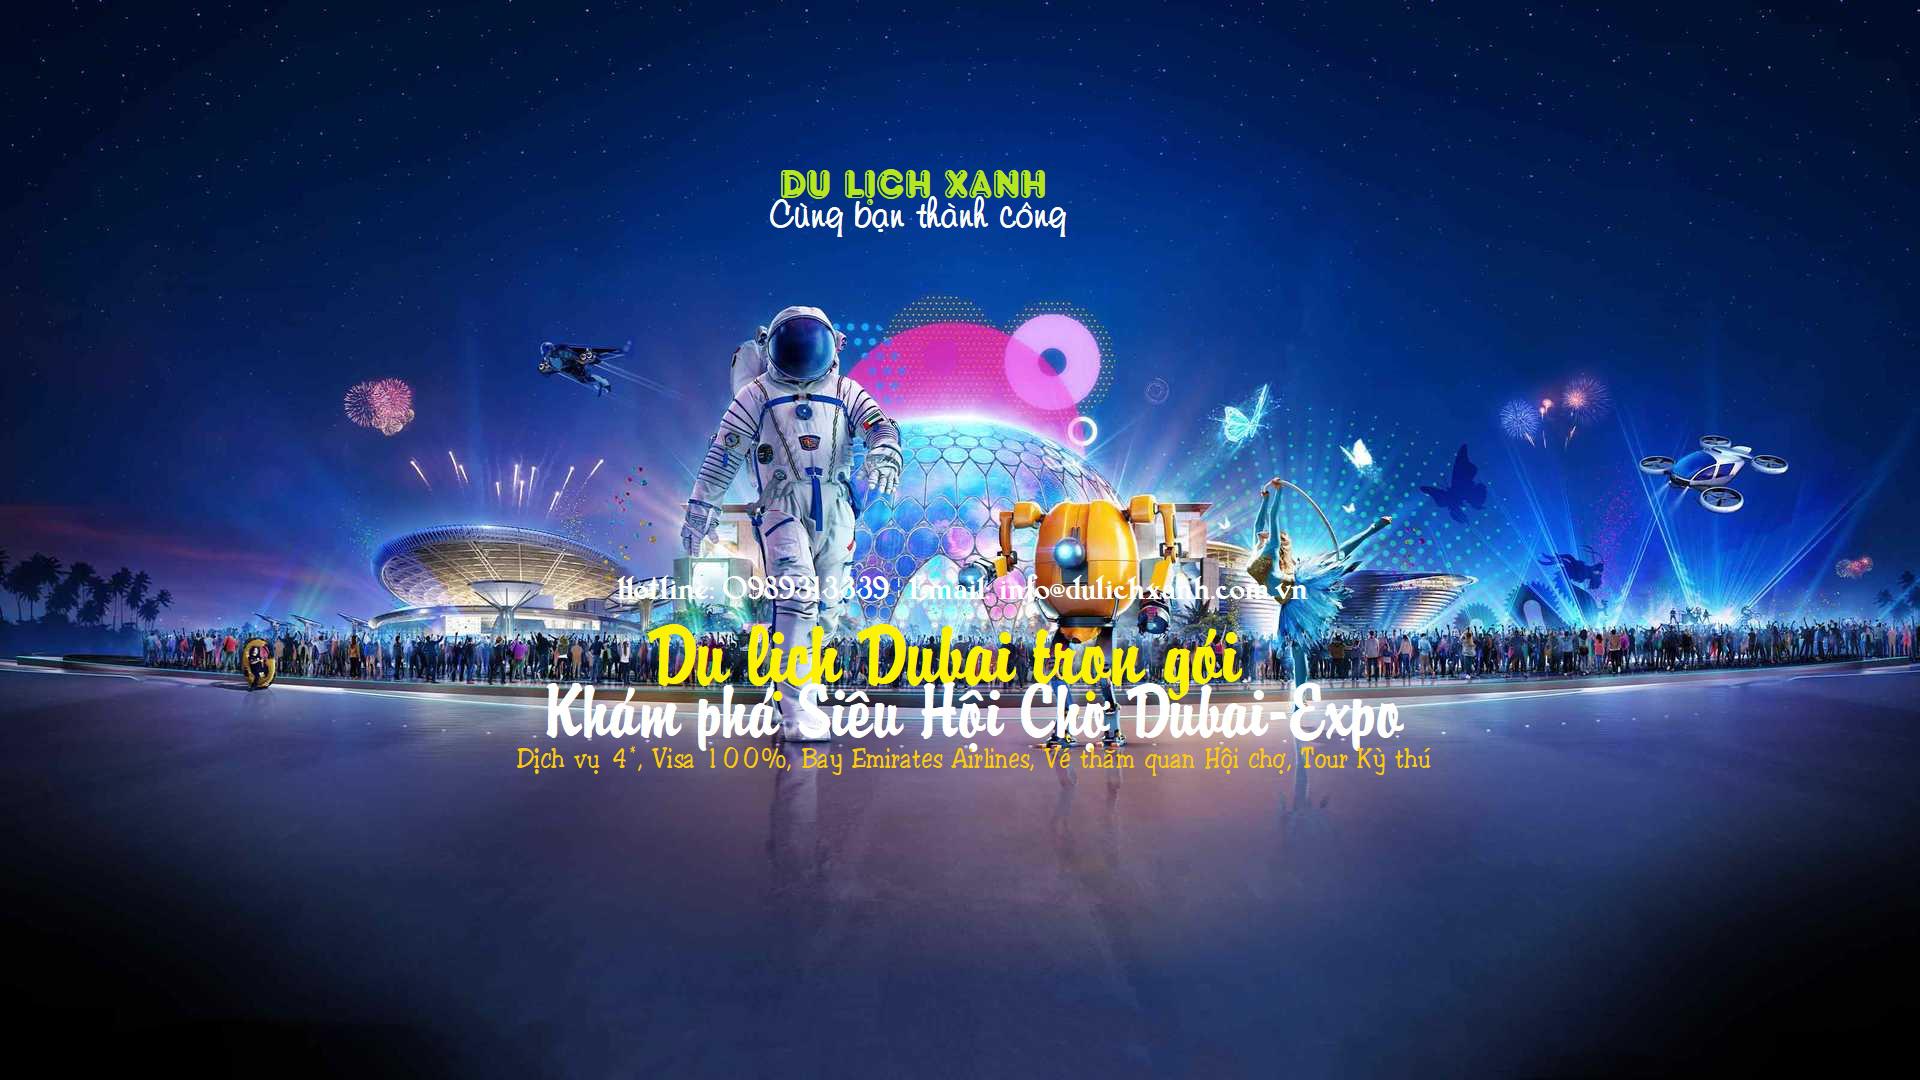 Tour Hội Chợ Expo Dubai 2020 kết hợp du lịch Dubai 